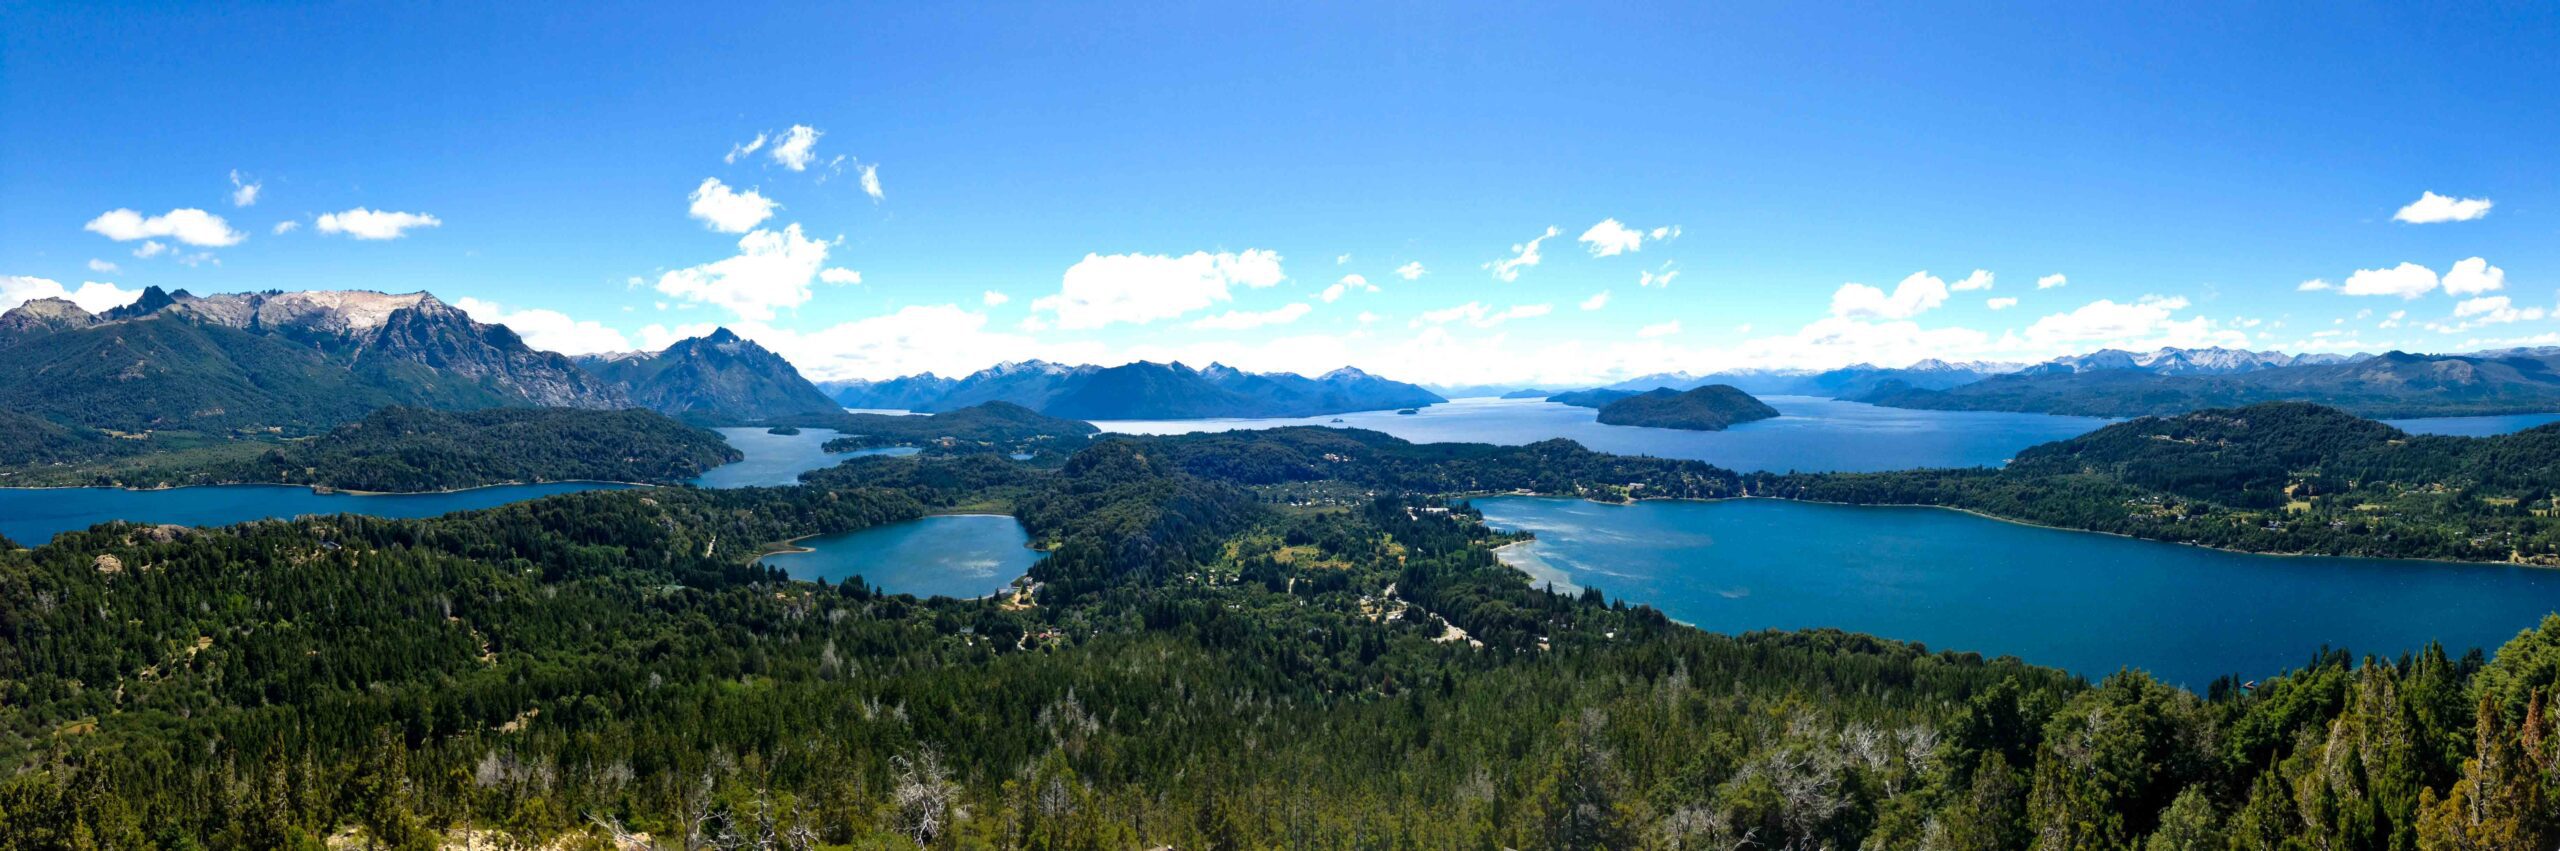 Lake views over Bariloche Argentina